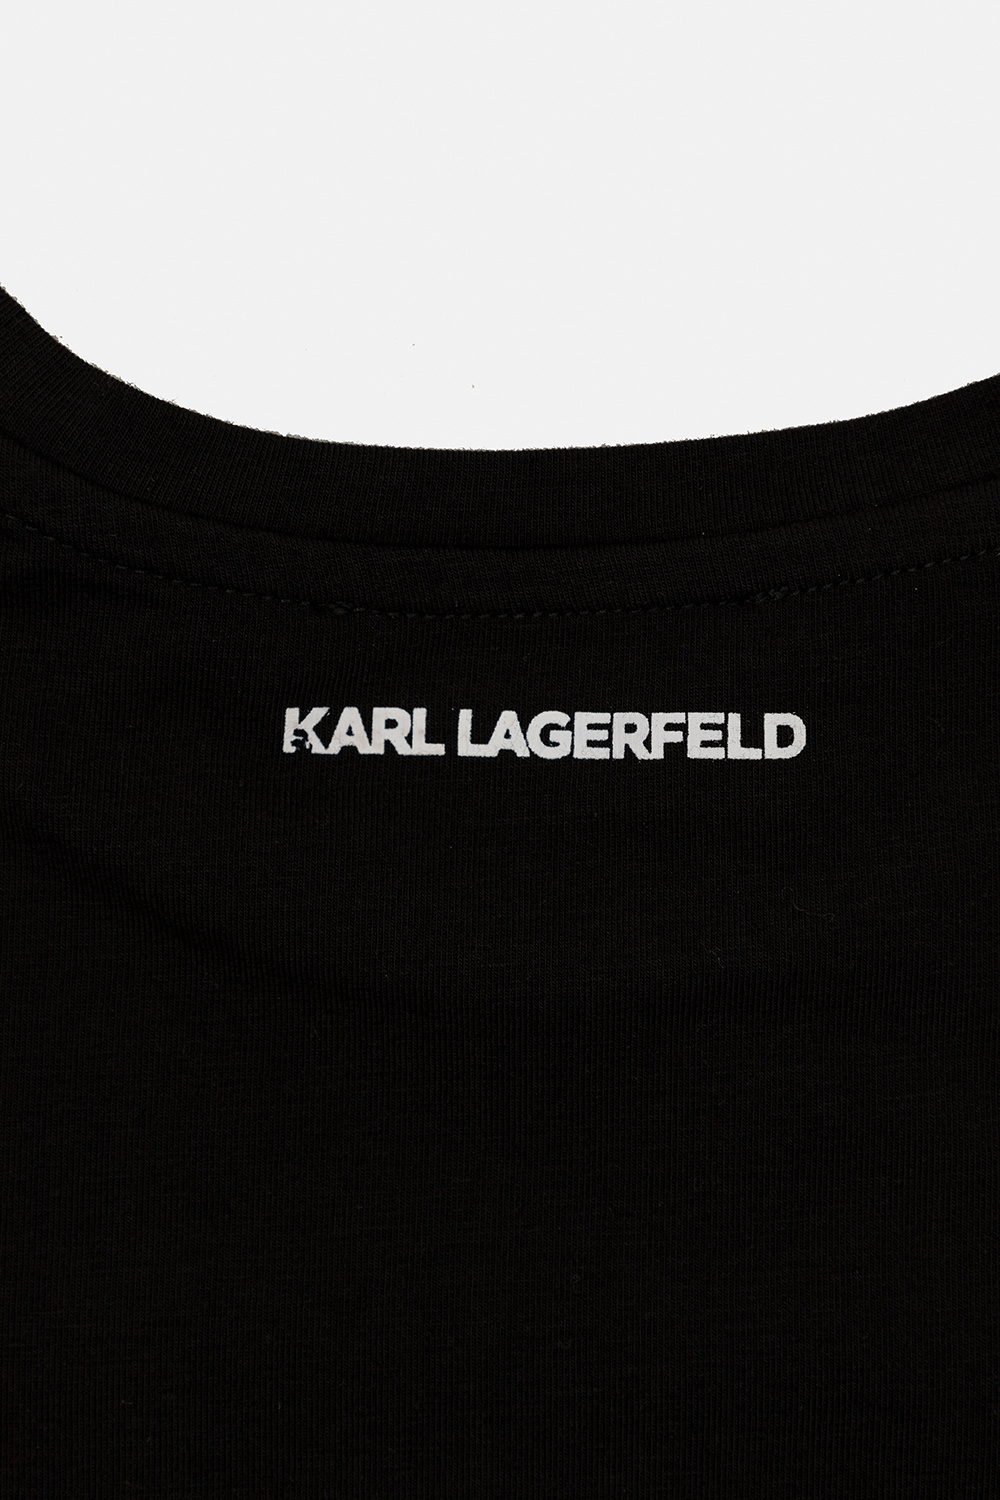 Karl Lagerfeld Kids nike air foamposite one wu tang clothing